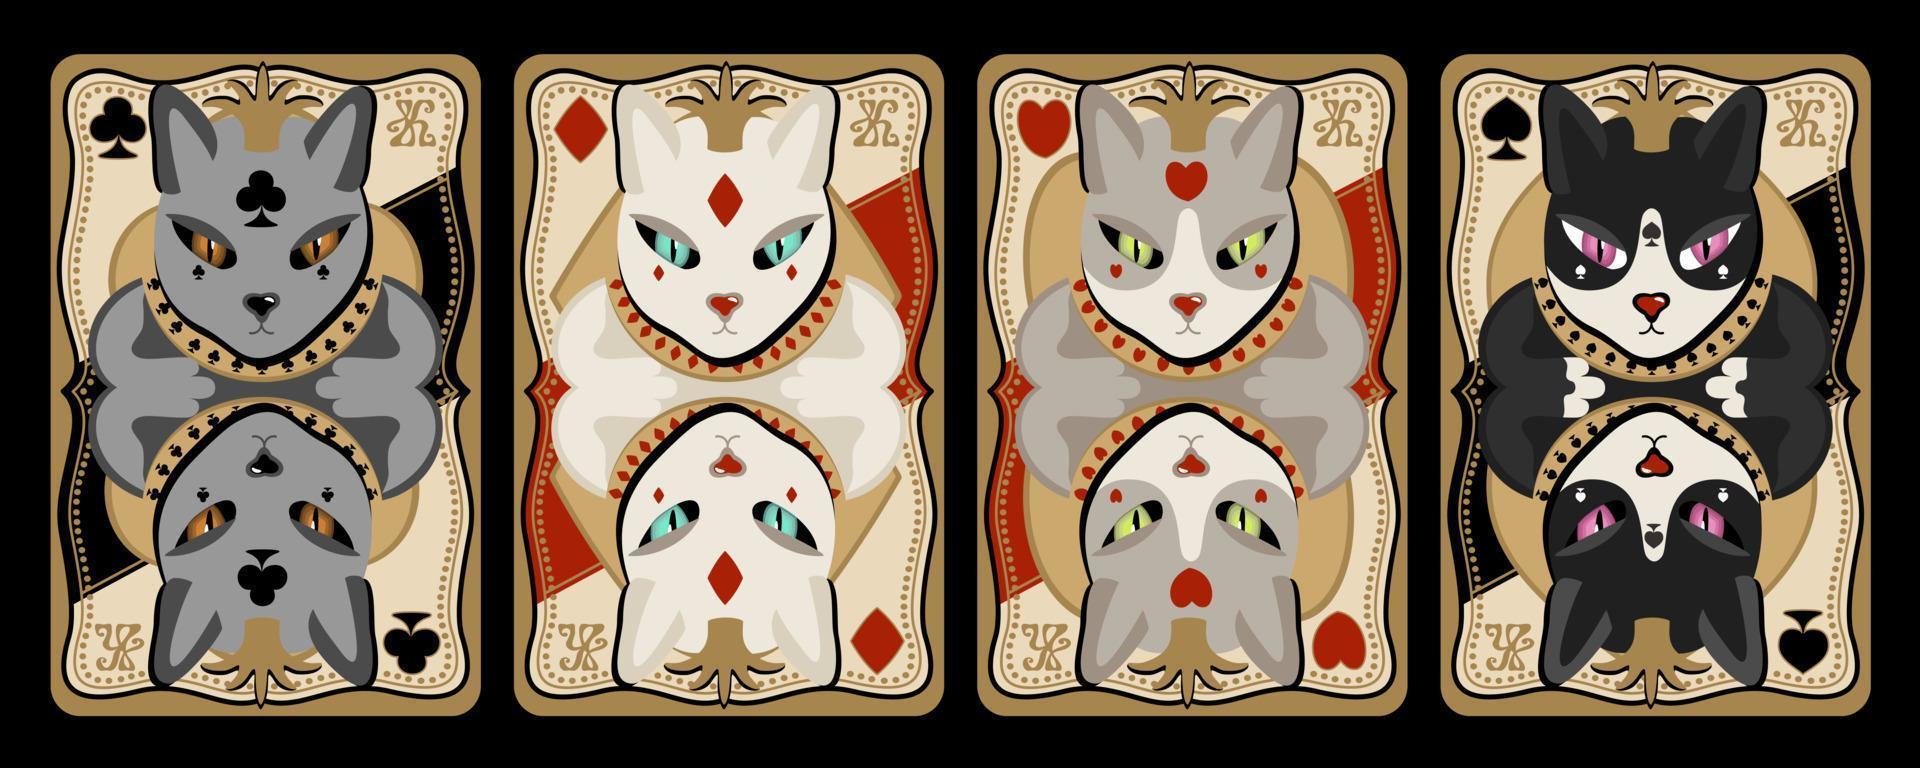 jogando cartas, quatro reis com cabeças de gatos. vetor definido isolado no fundo preto.